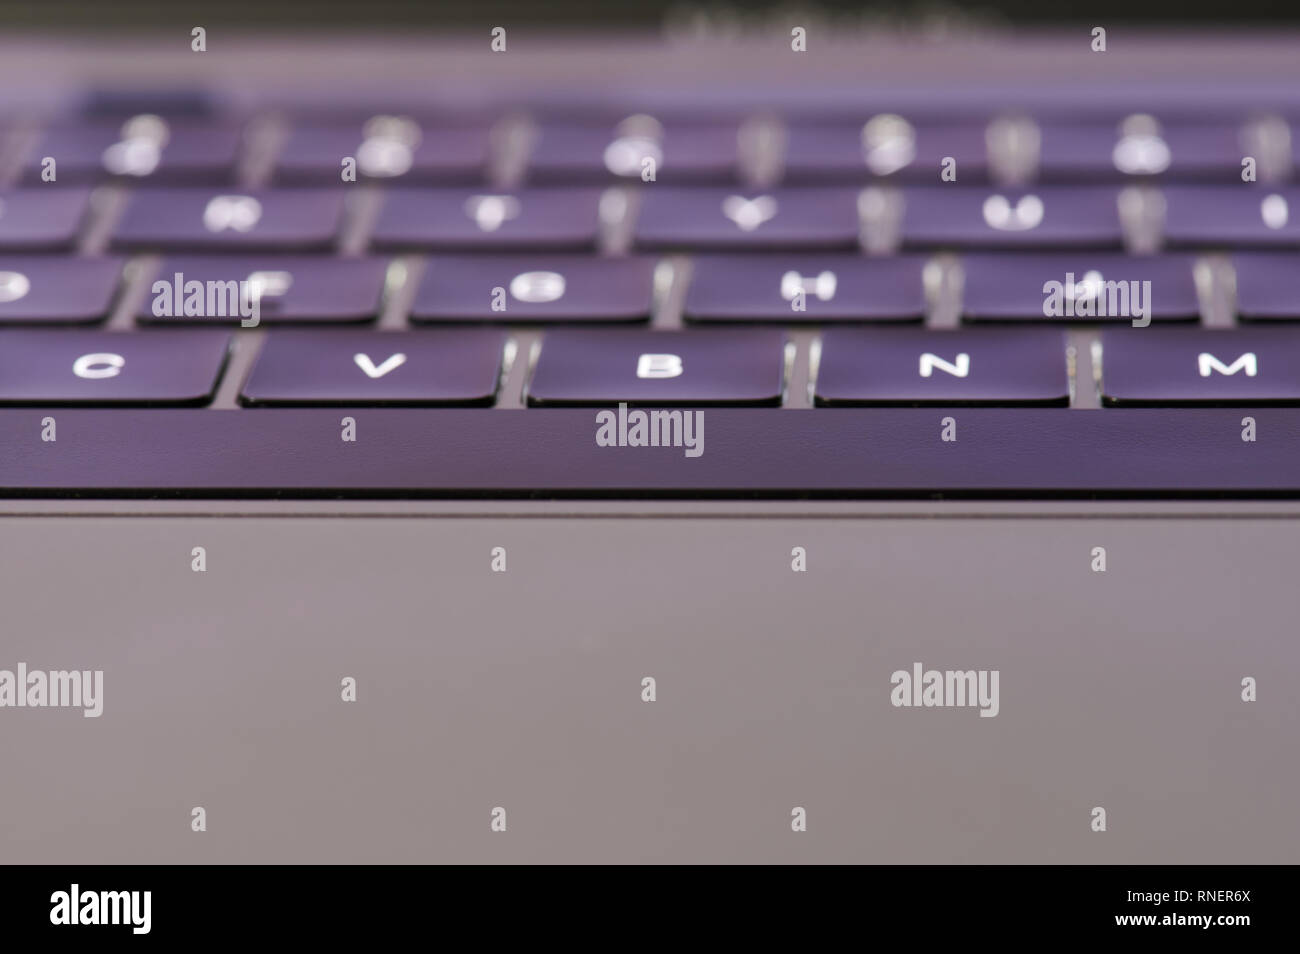 Laptop Tastatur winkel Nähe zu sehen. Space-Taste auf der Tastatur  Stockfotografie - Alamy